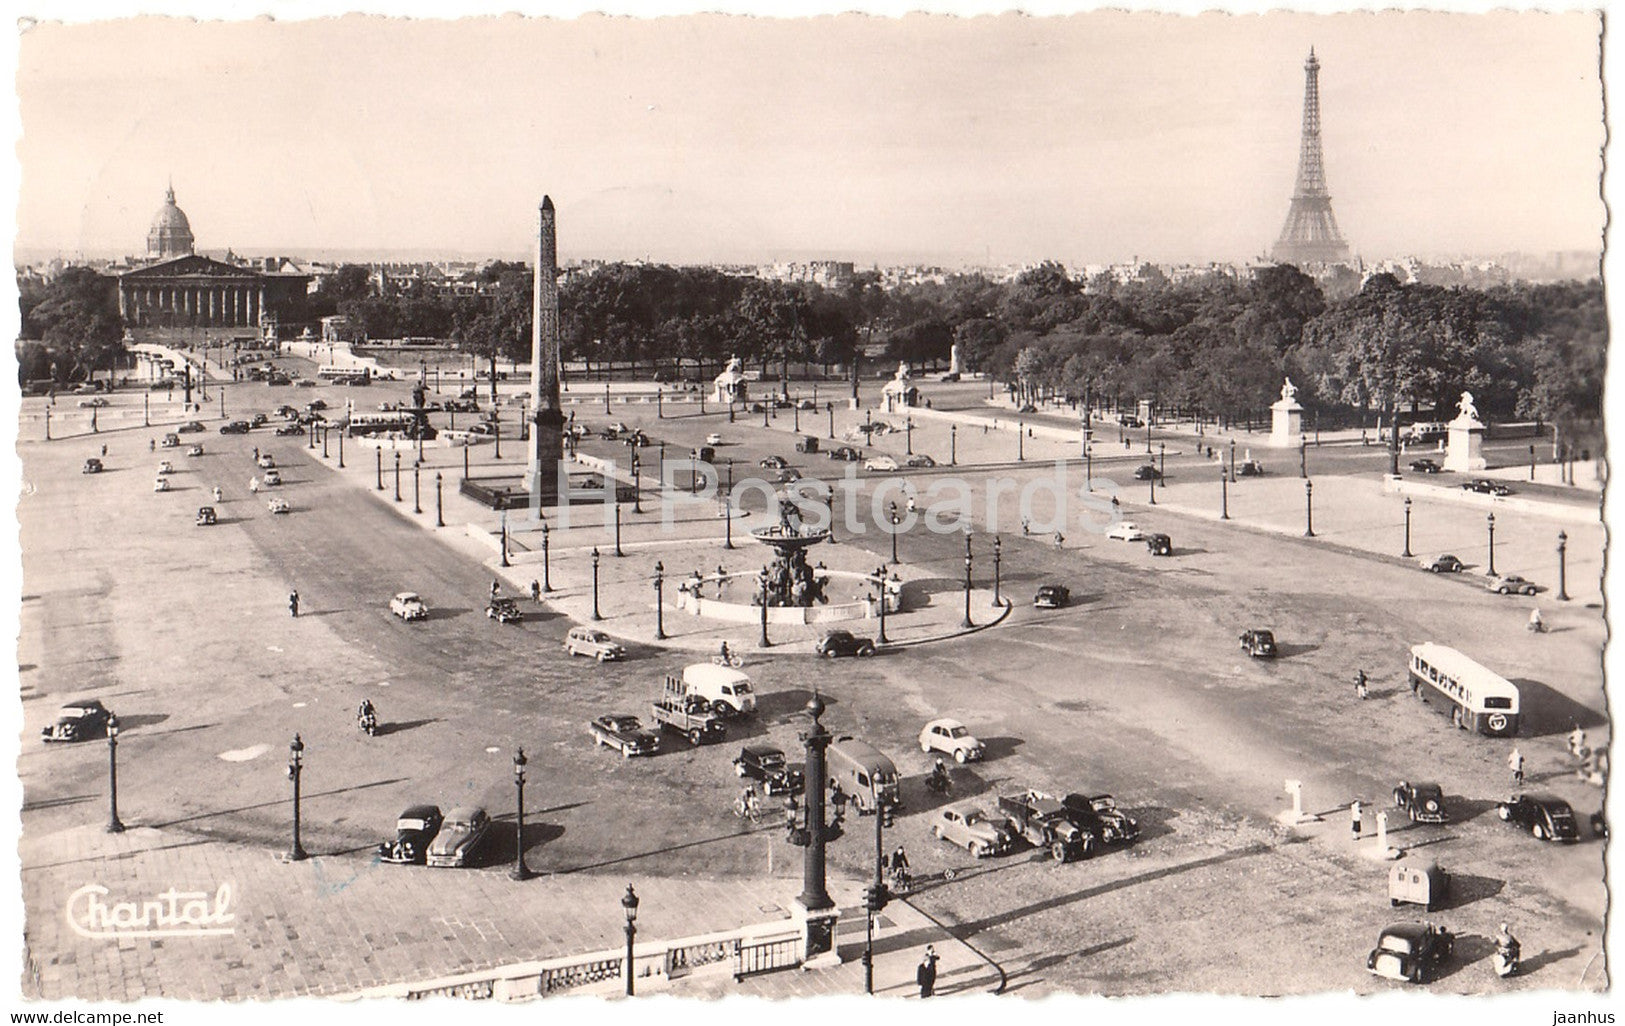 Paris - Place de la Concorde - car - bus - 25 - old postcard - 1956 - France - used - JH Postcards